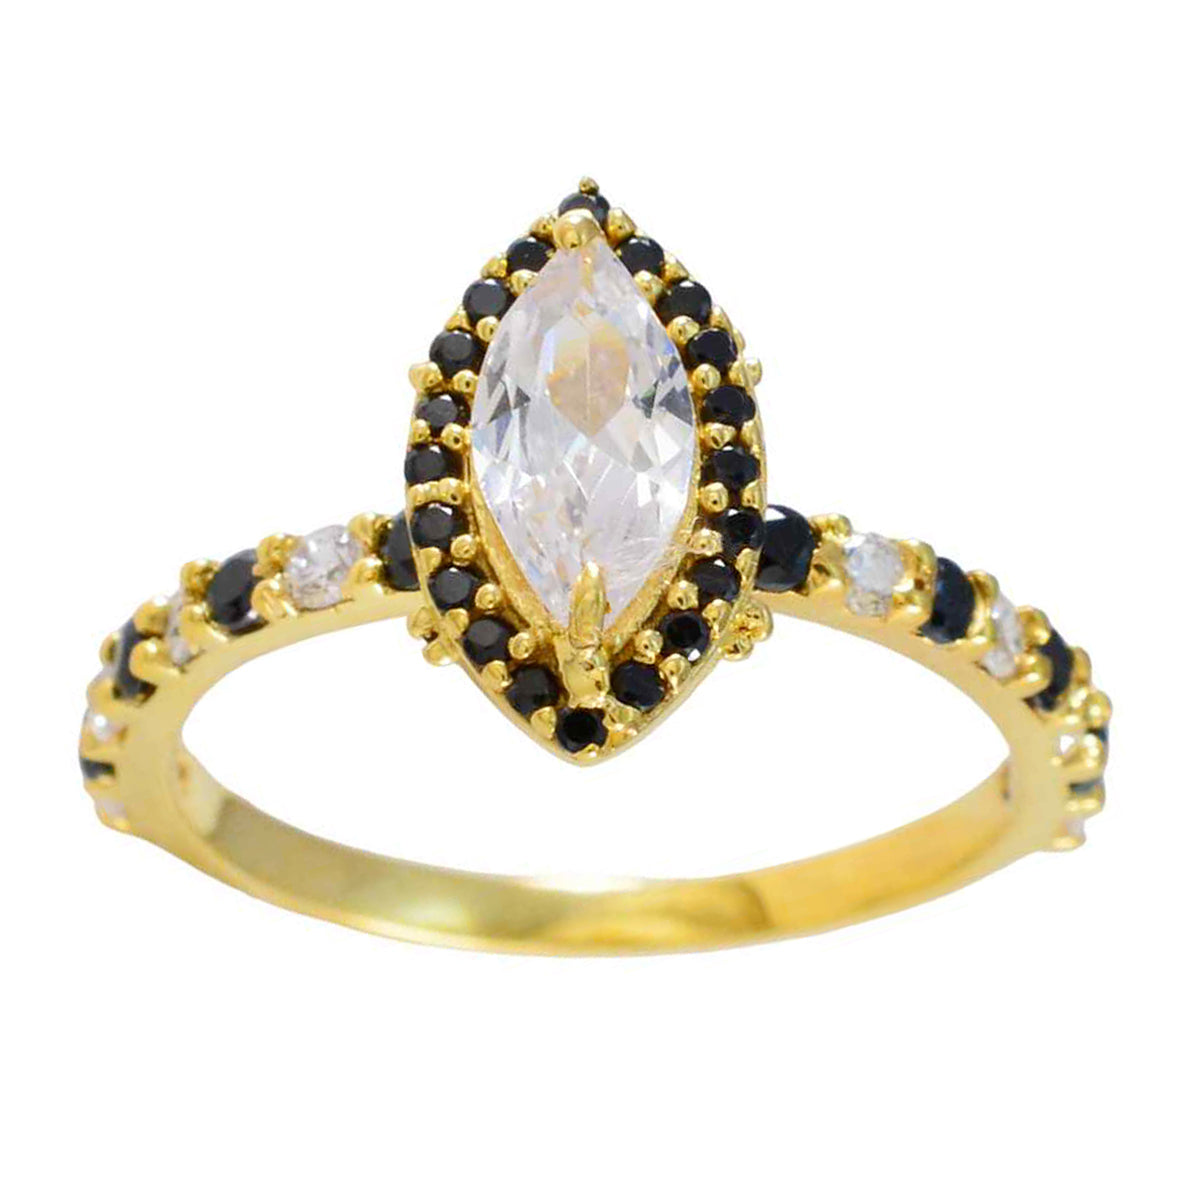 riyo superbo anello in argento con placcatura in oro giallo con pietra di zaffiro blu a forma di marquise con montatura a punta anello di fidanzamento con gioielli antichi